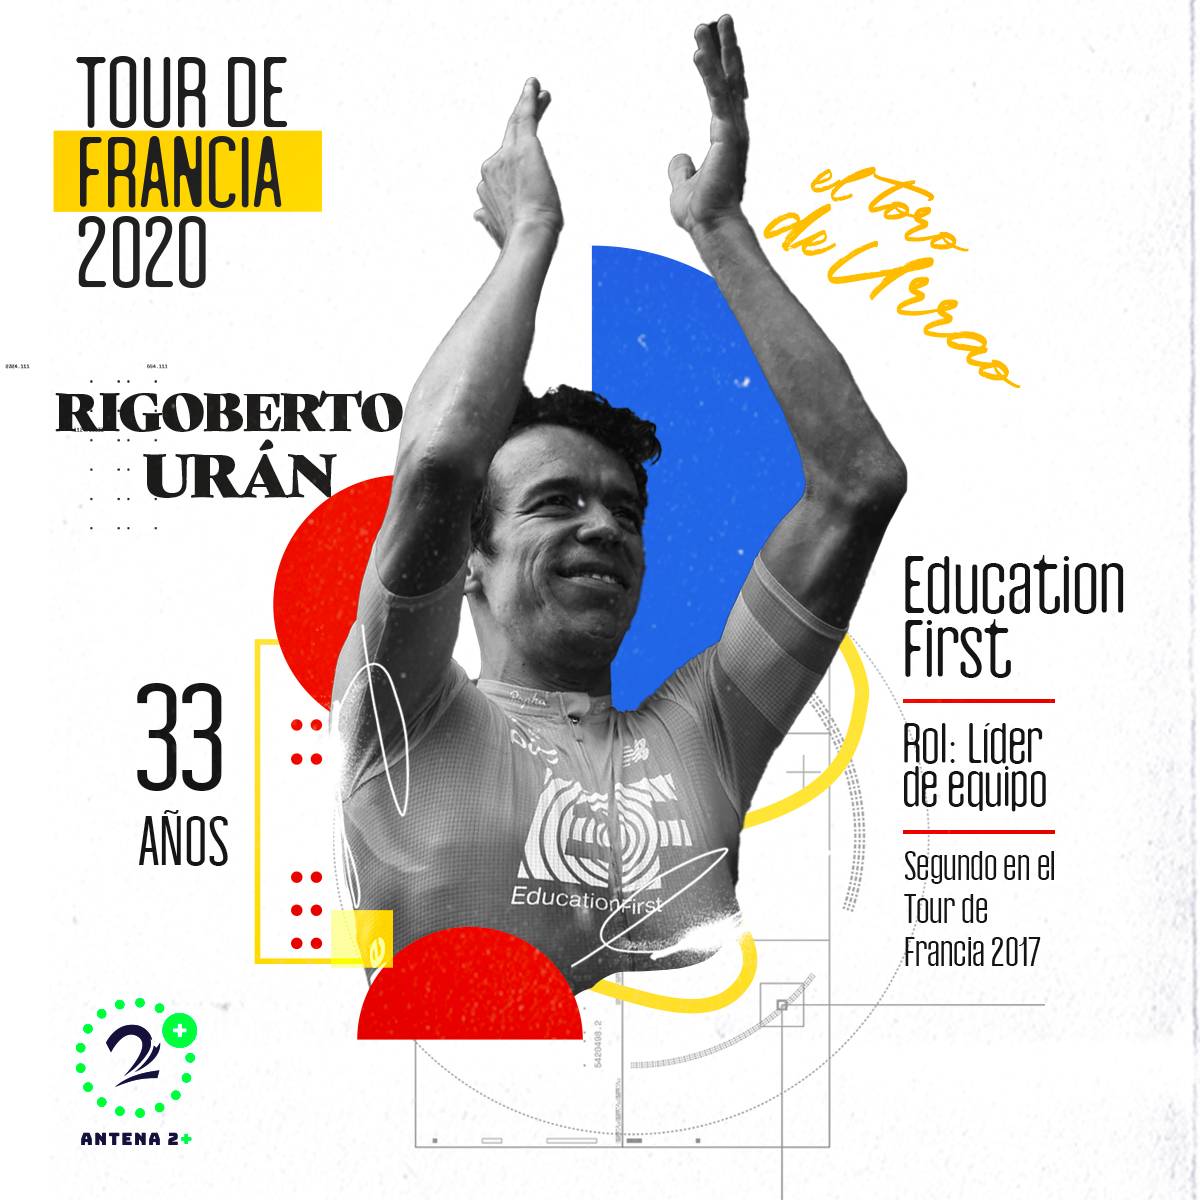 Rigoberto Urán, Tour de Francia